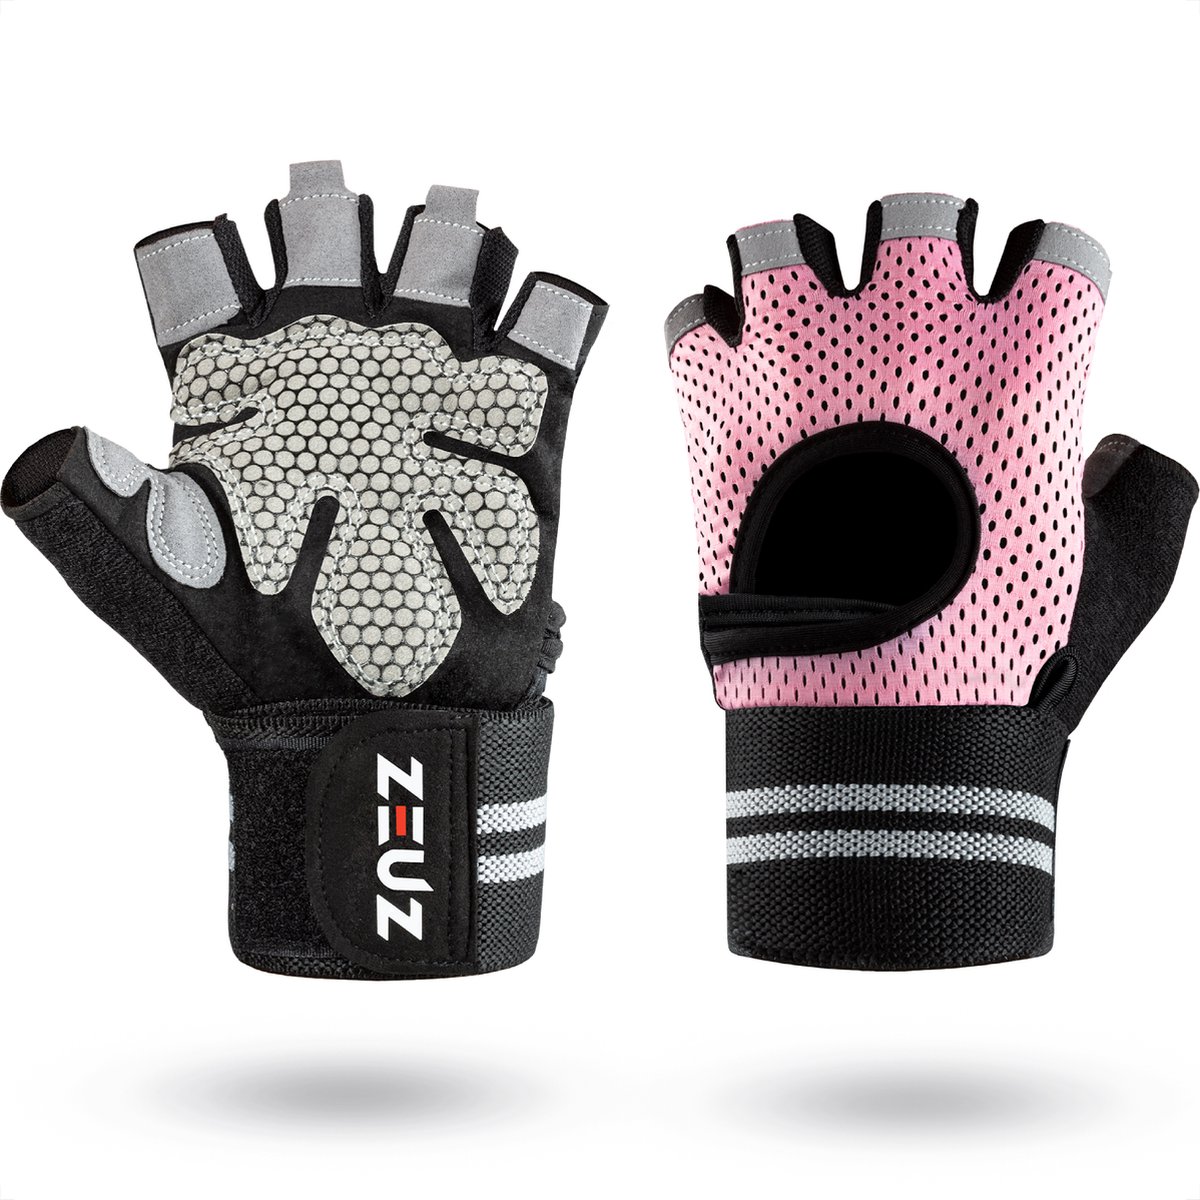 ZEUZ Sport & Fitness Handschoenen Dames – Krachttraining Artikelen – Geschikt voor Gym & CrossFit Training – Roze & Zwart – Maat M - ZEUZ